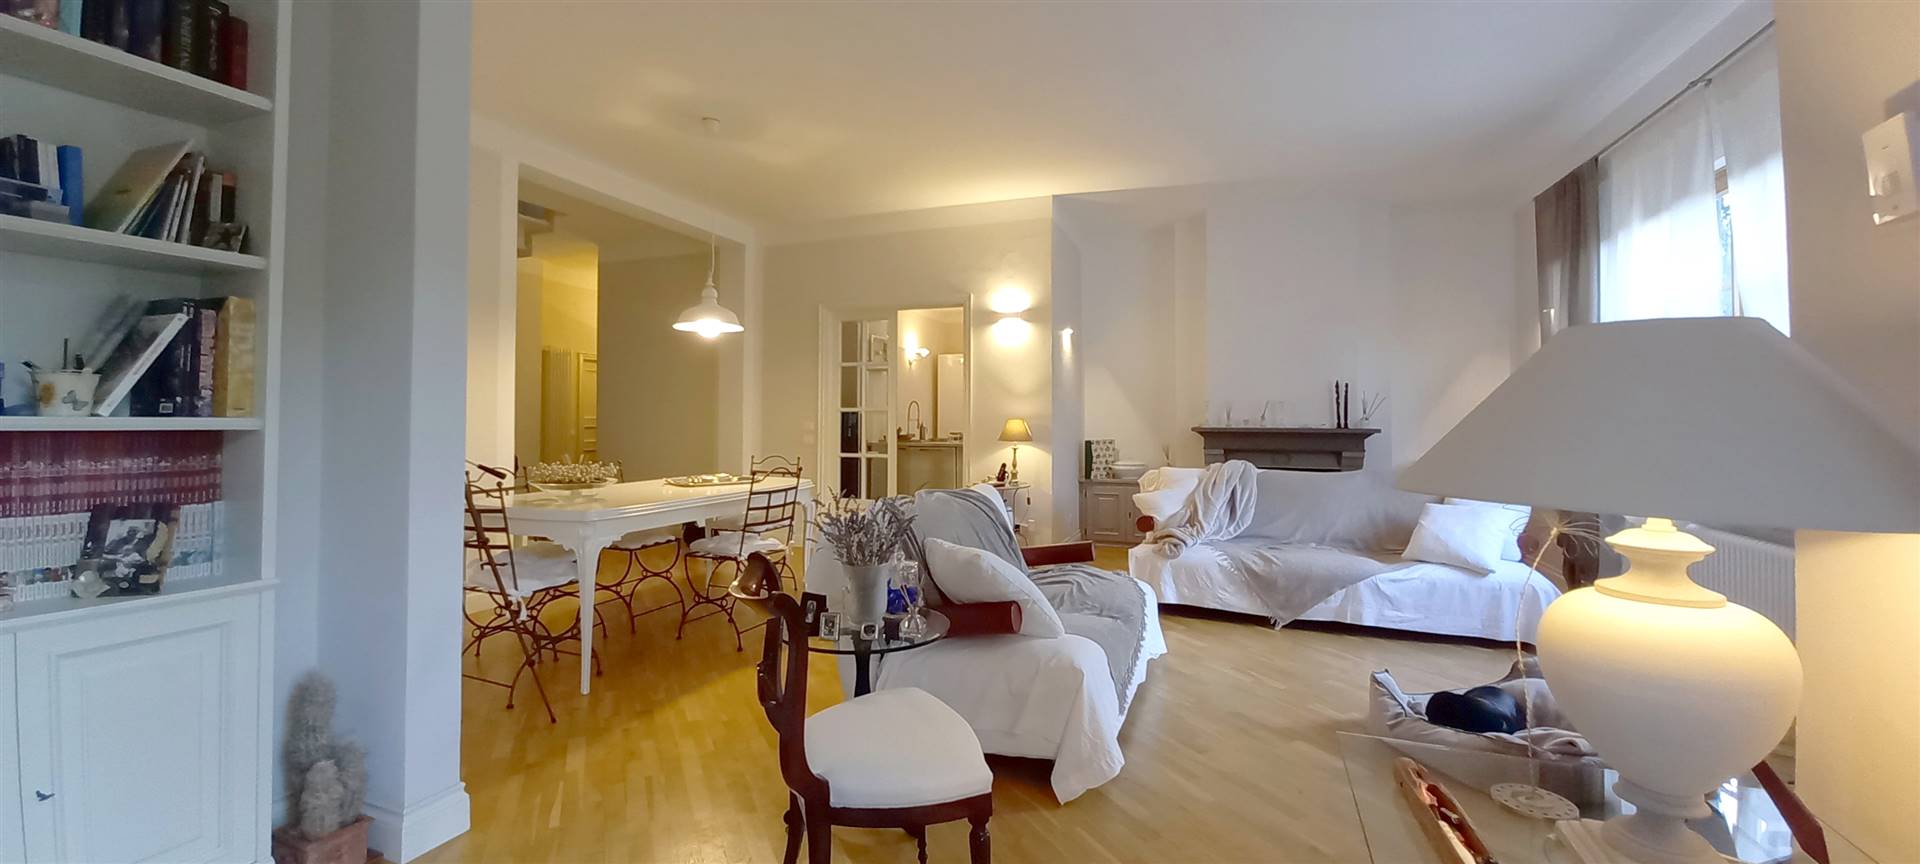 Villa in vendita a Quarrata, 9 locali, zona Ferretti, Trattative riservate | PortaleAgenzieImmobiliari.it